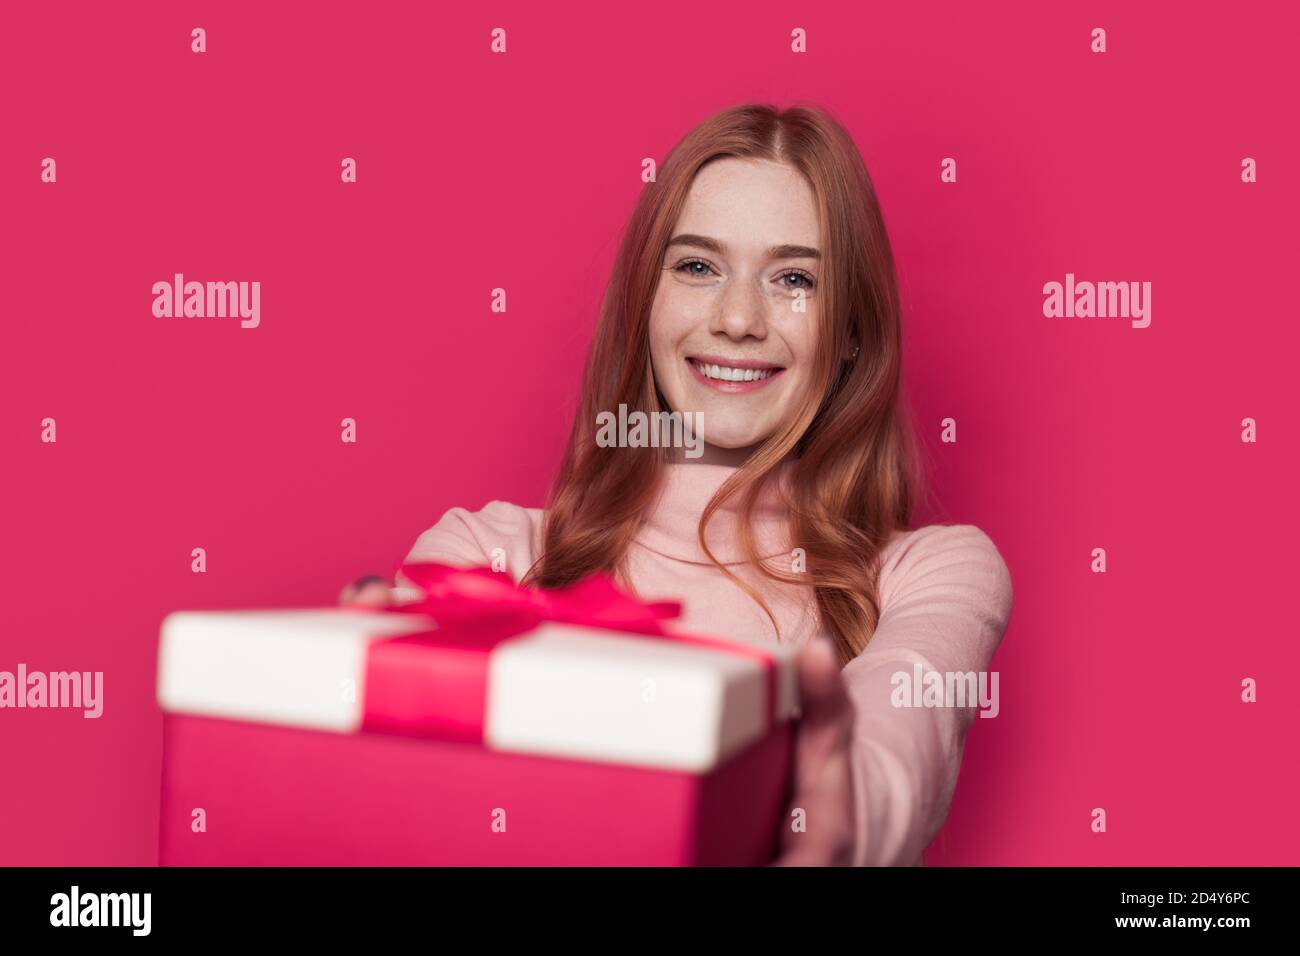 Charmante femme au gingembre avec des taches de rousseur donne un cadeau à l'appareil photo souriant sur un mur rose au studio Banque D'Images